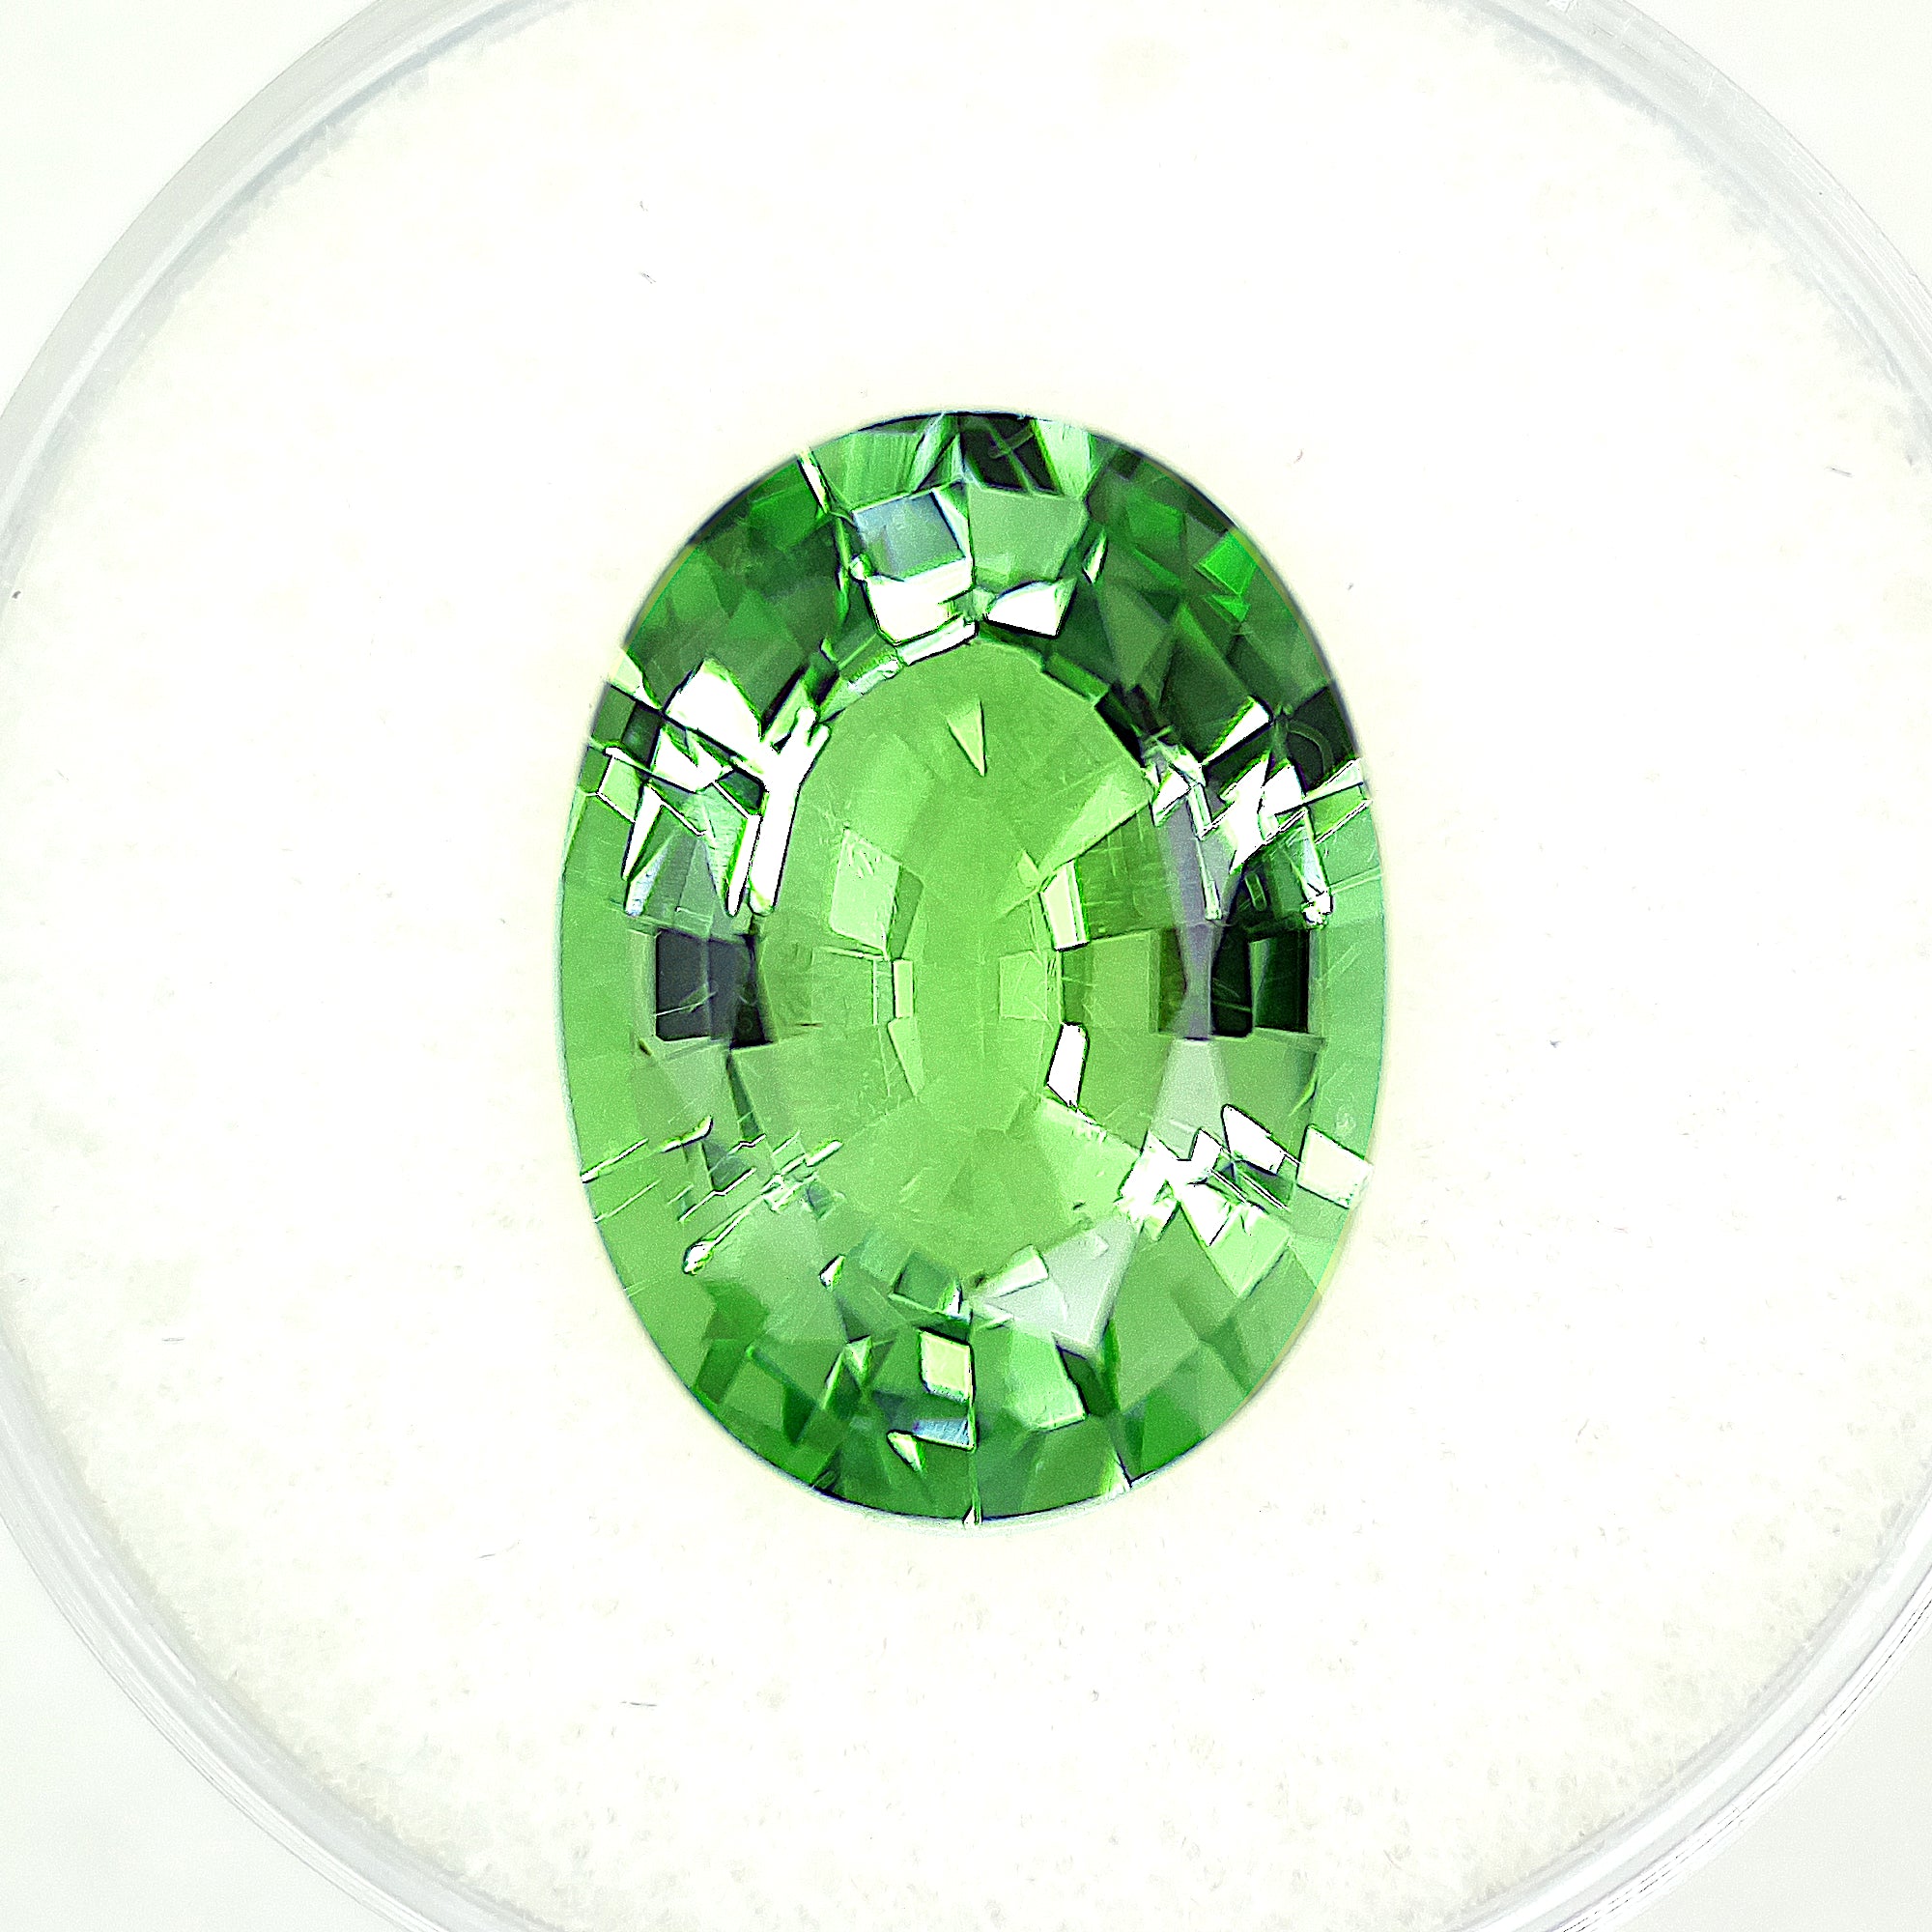 green tourmaline birthstone